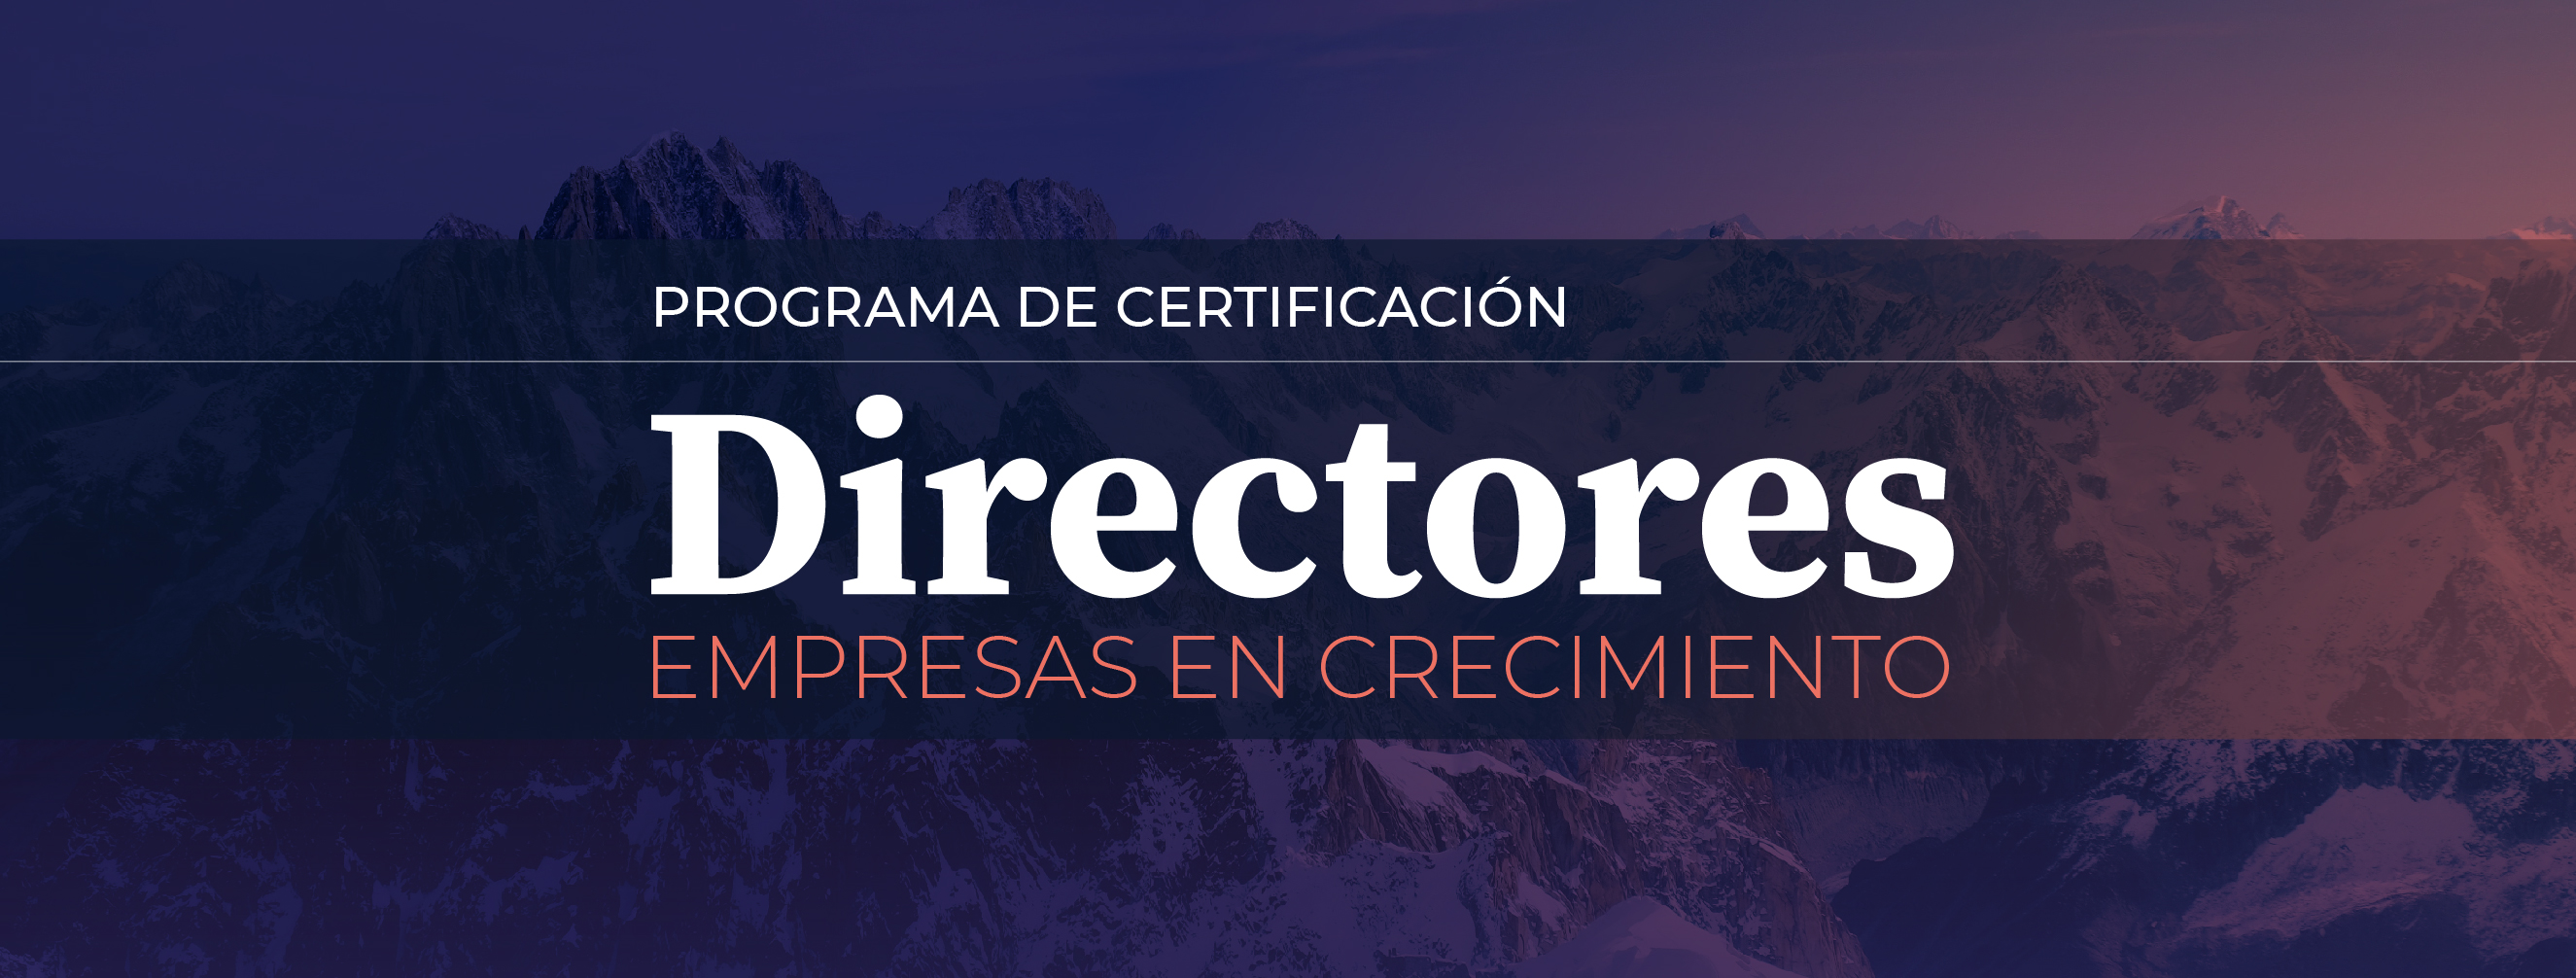 certificacion directores header-39